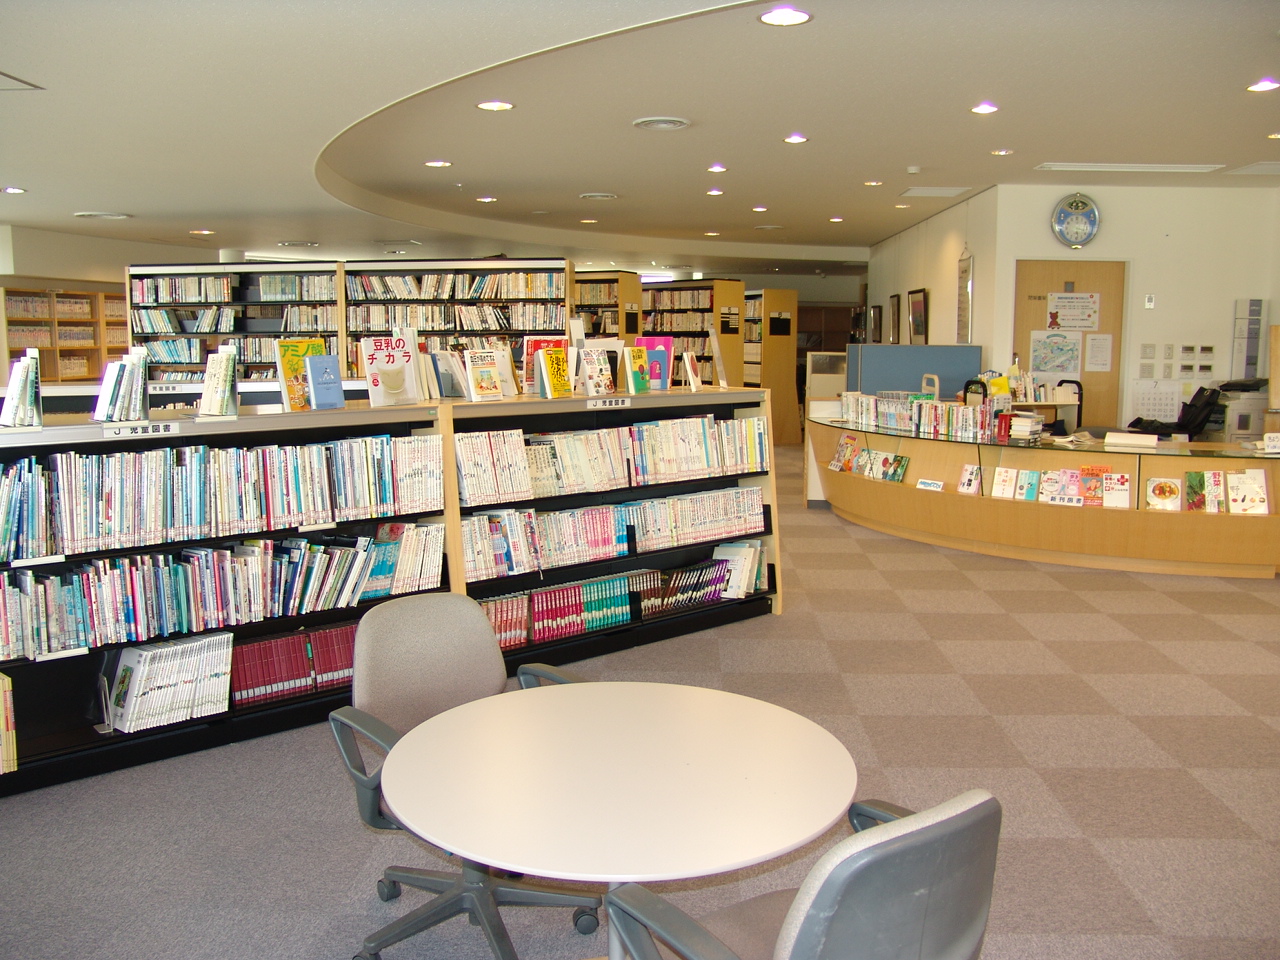 岩見沢市北村学習交流館にある1組のテーブルと椅子が配置されたスペースの奥にある本棚と貸し出しカウンターの写真